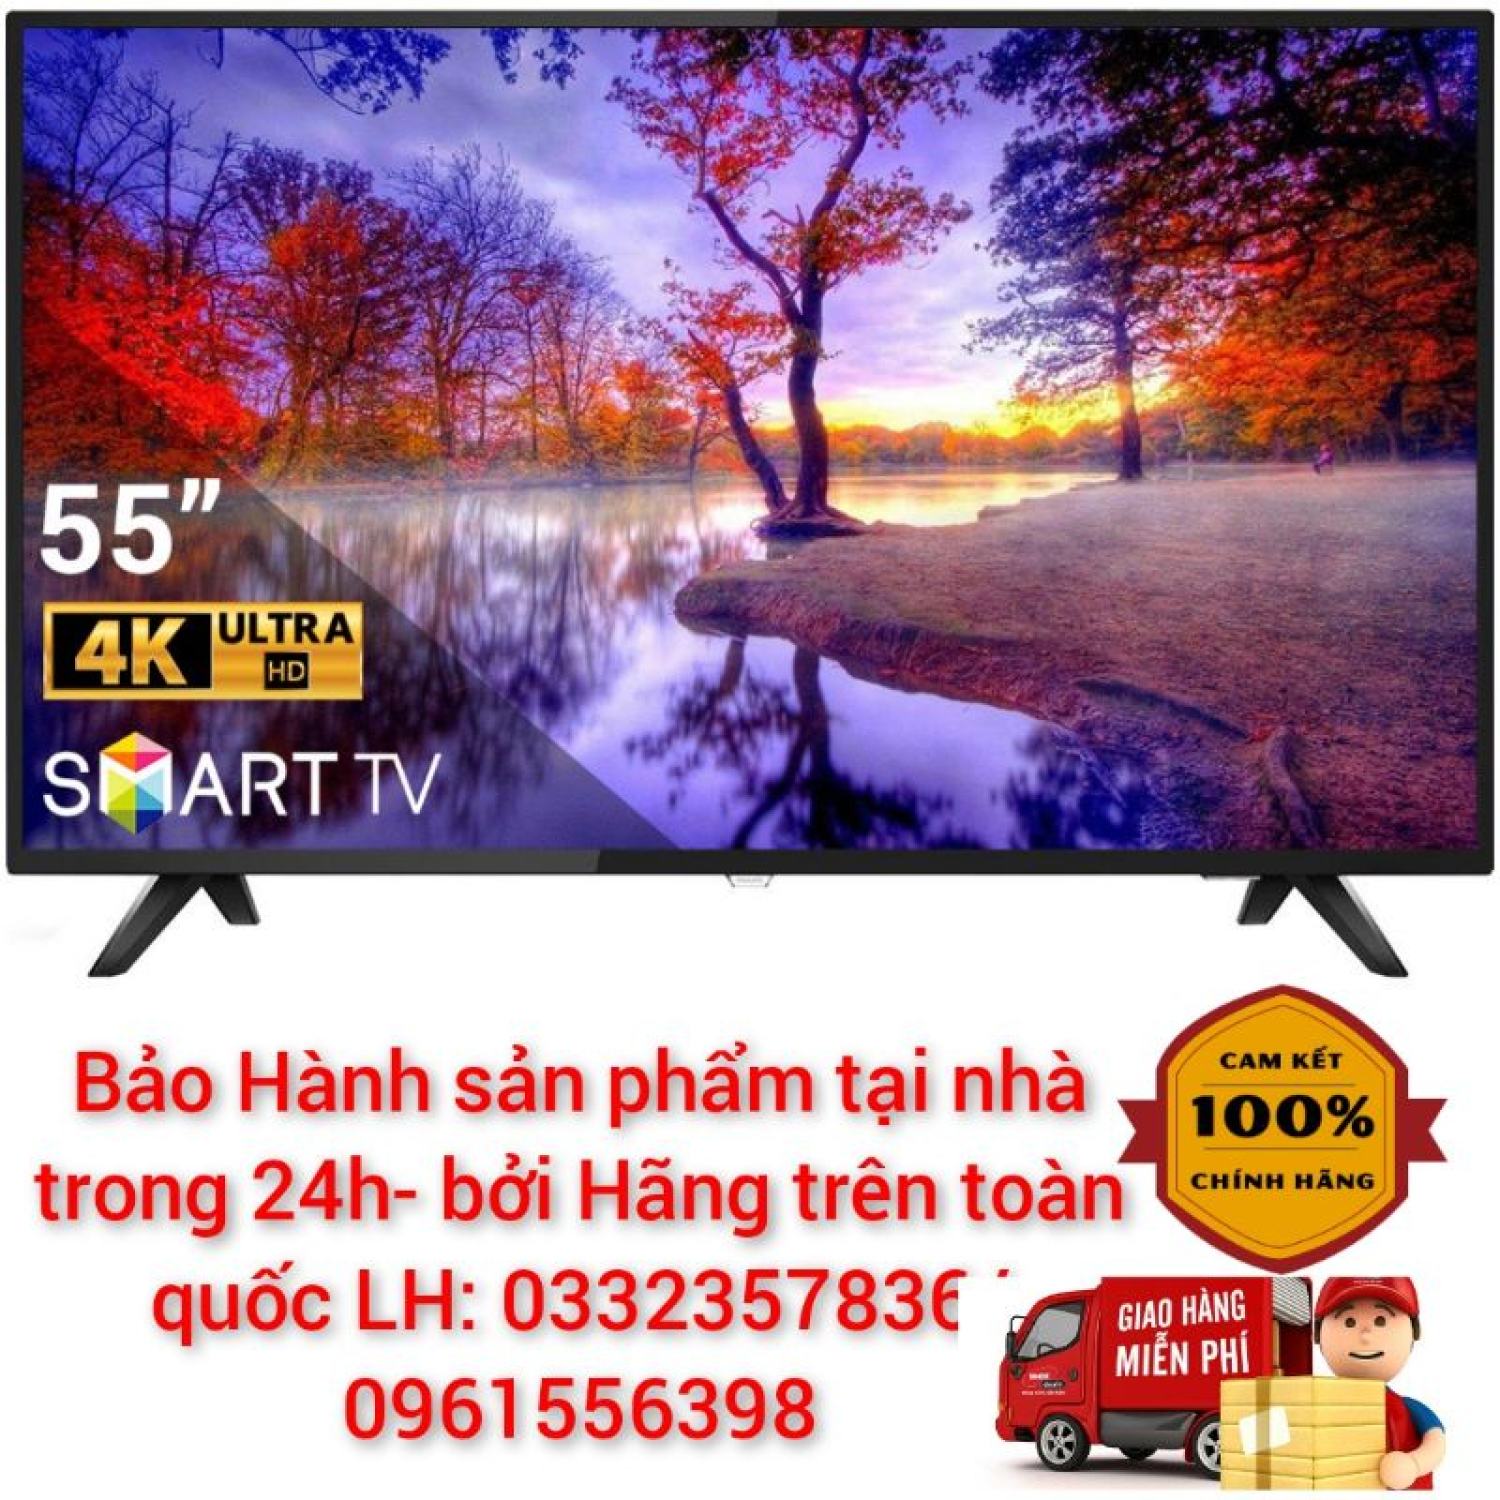 Bảng giá Smart Tivi Philips 4K 55 inch 55PUT6103S/67 < Chính hãng BH:24 tháng tại nhà toàn quốc >